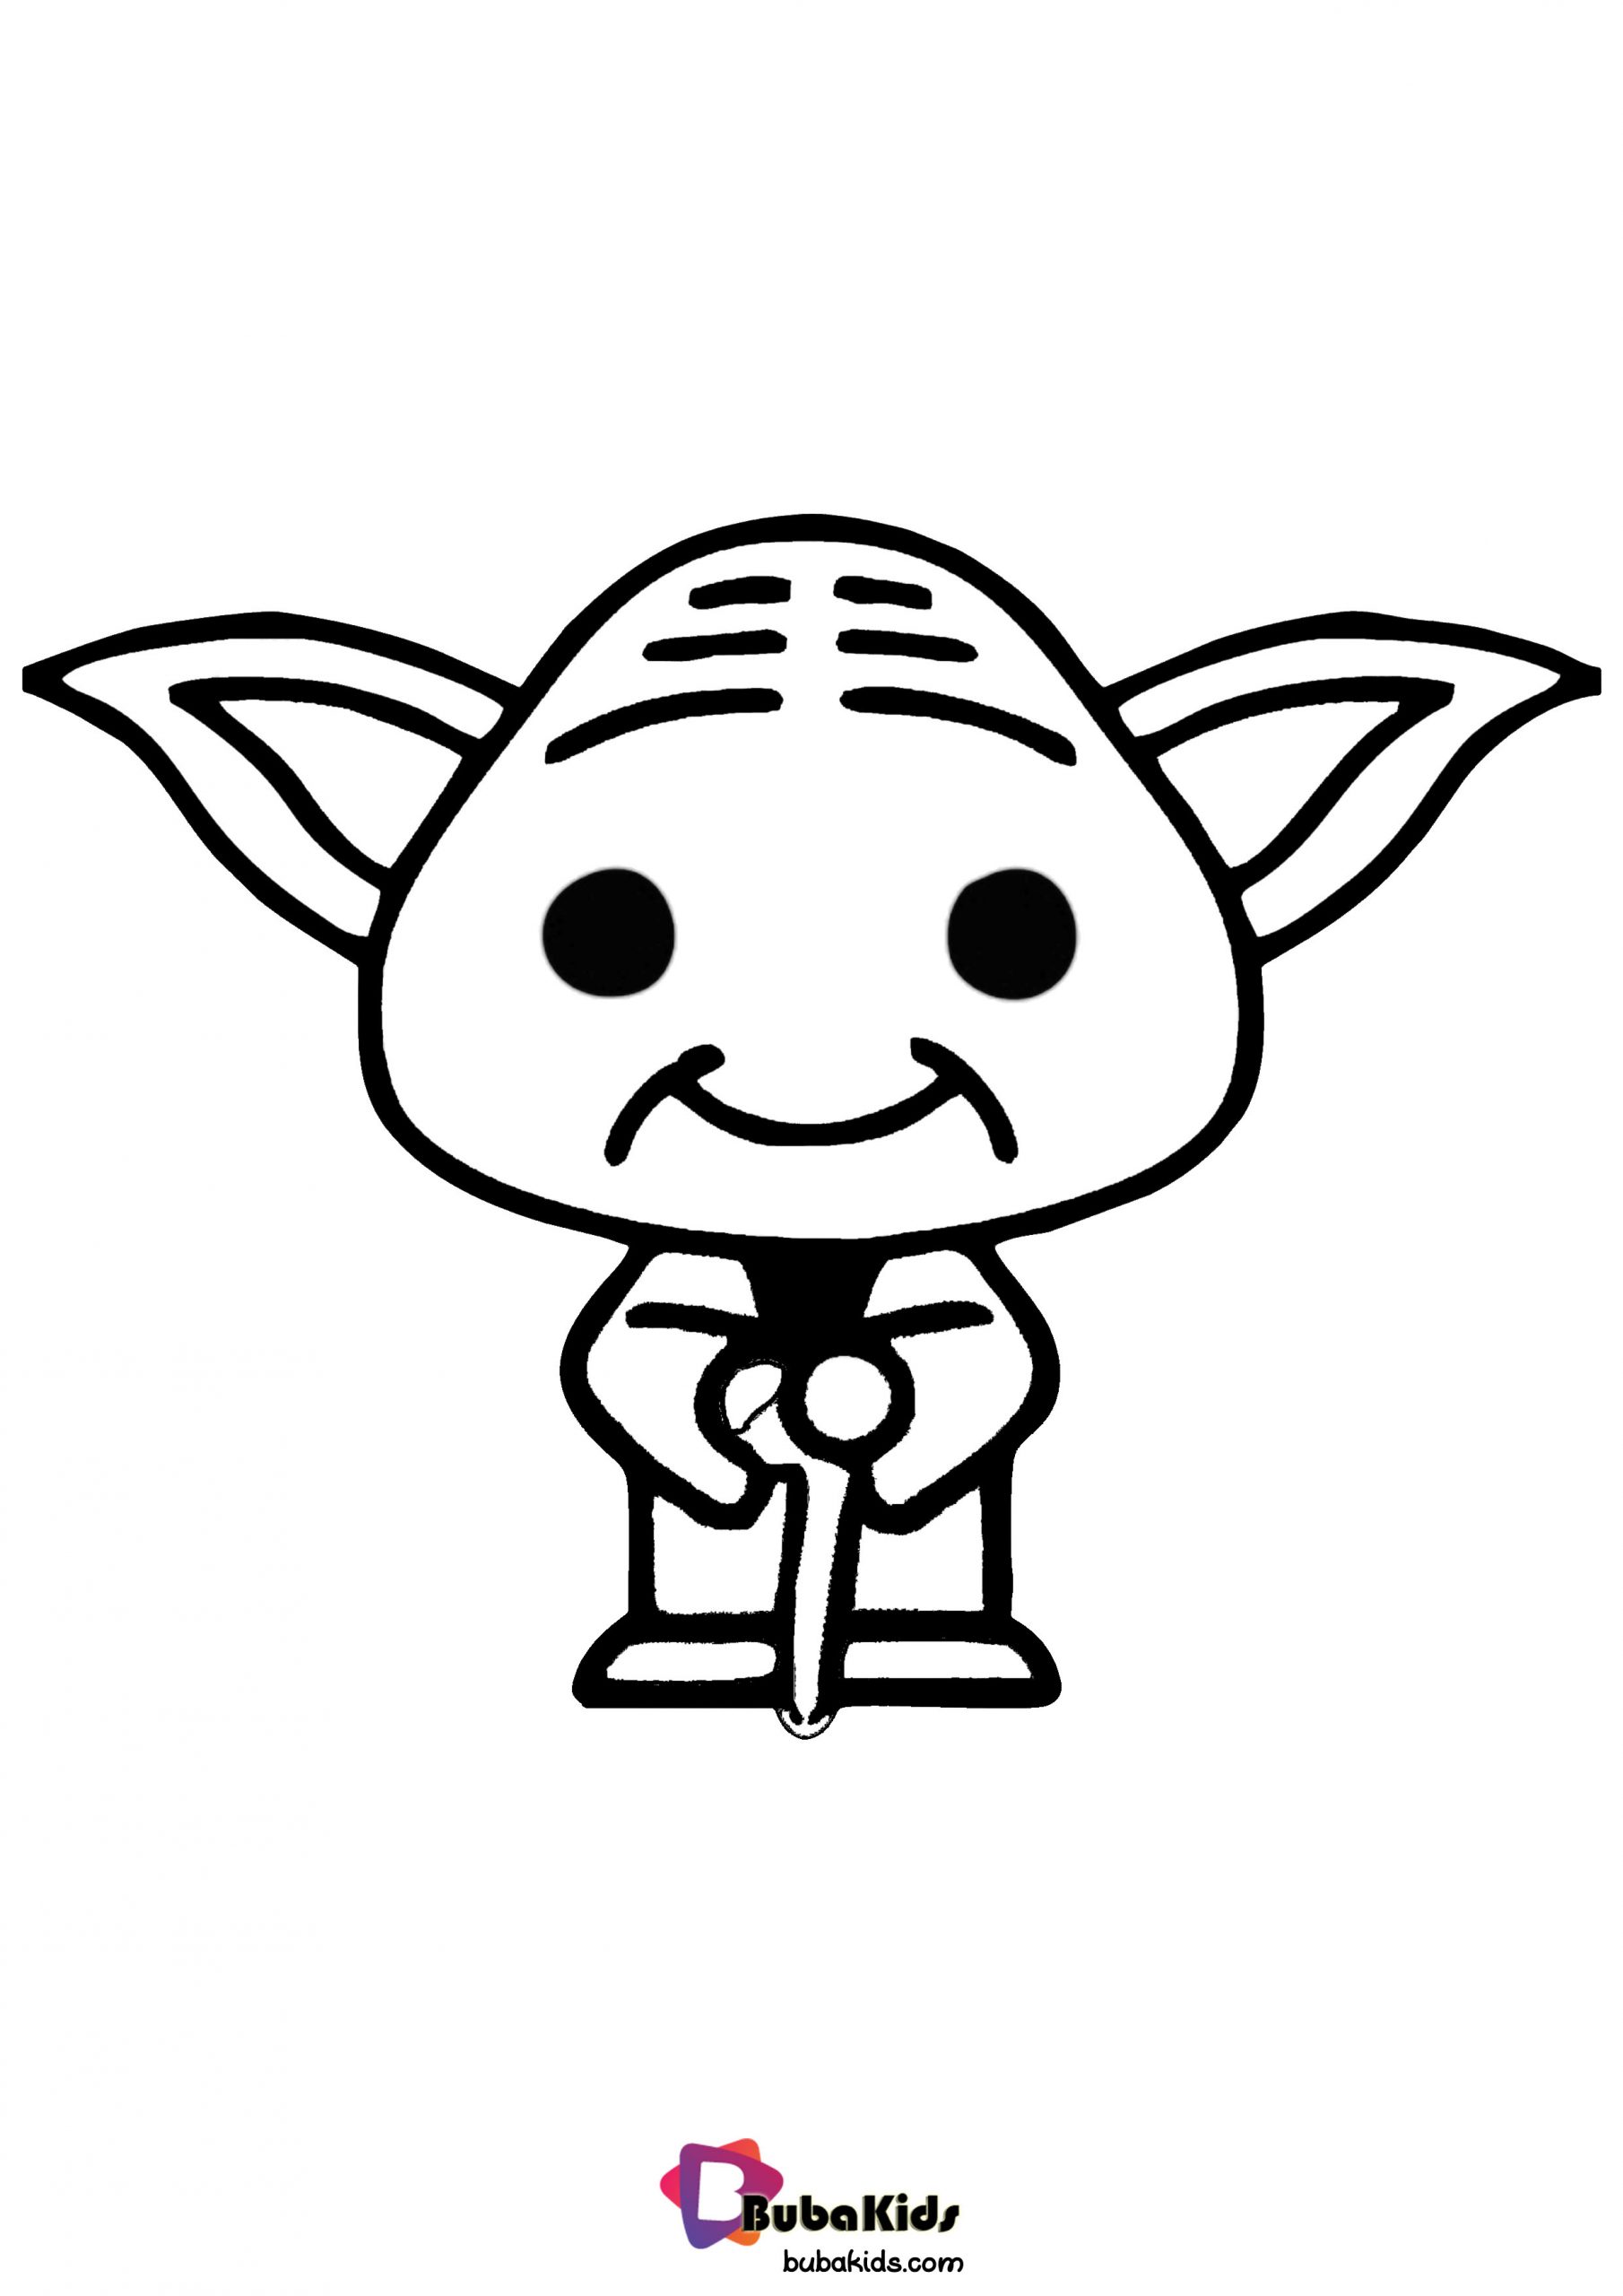 Baby Yoda Coloring Page Wallpaper